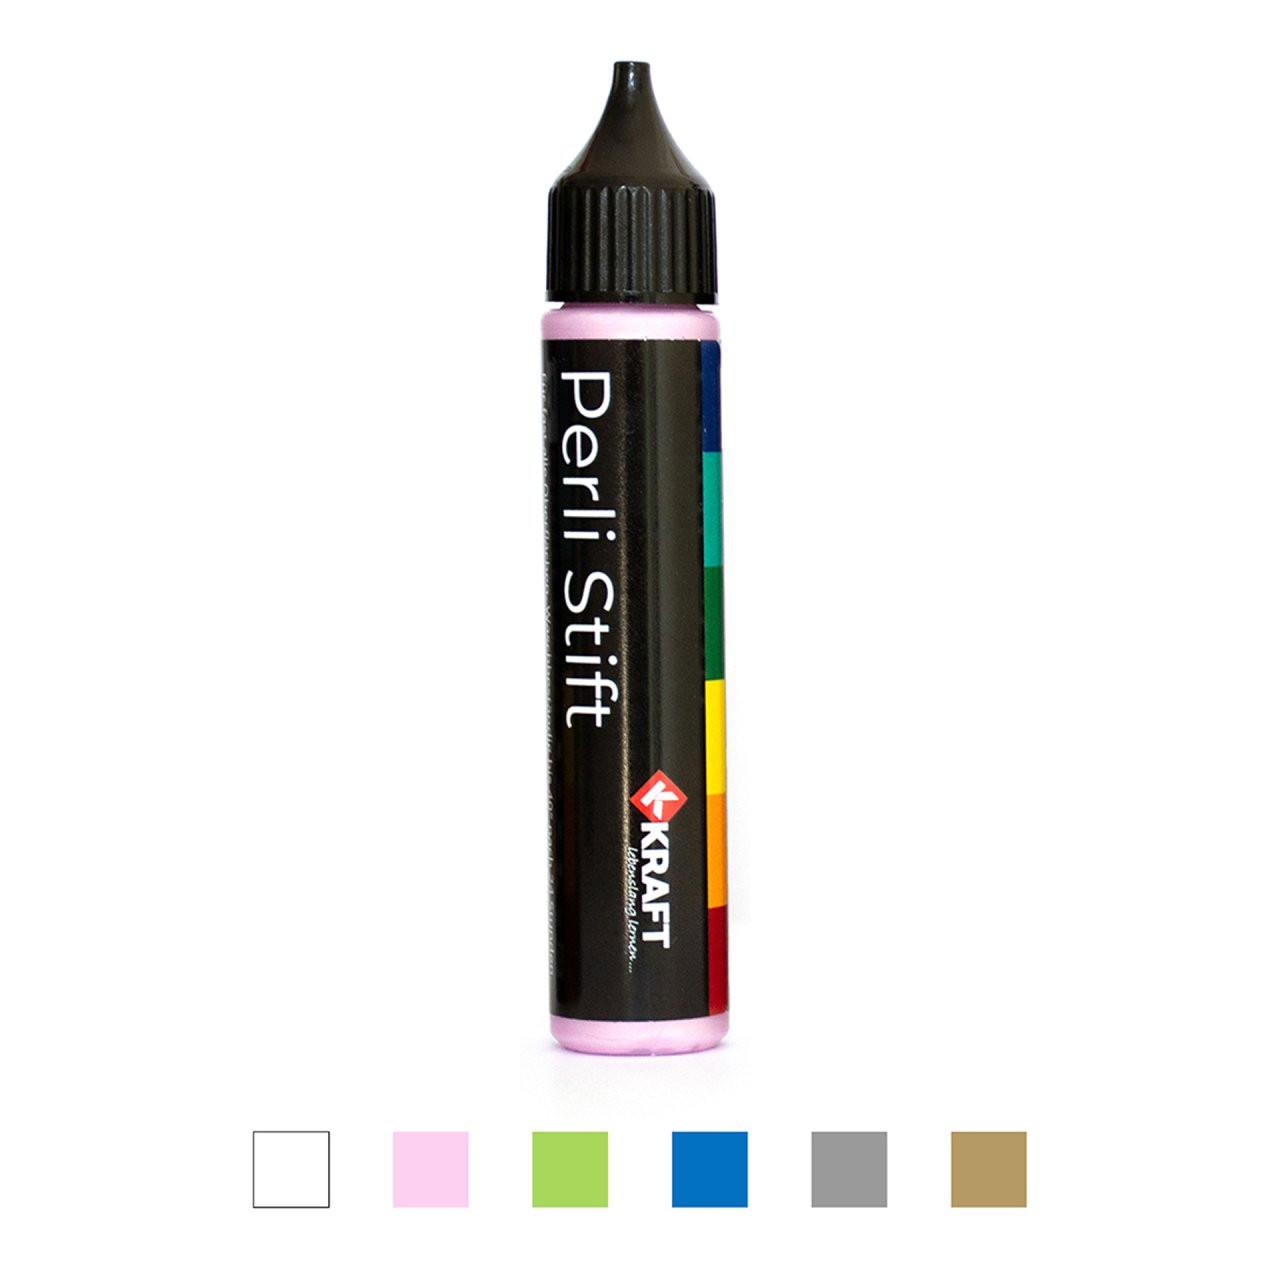 Perli Stifte, in 6 Farben erhältlich